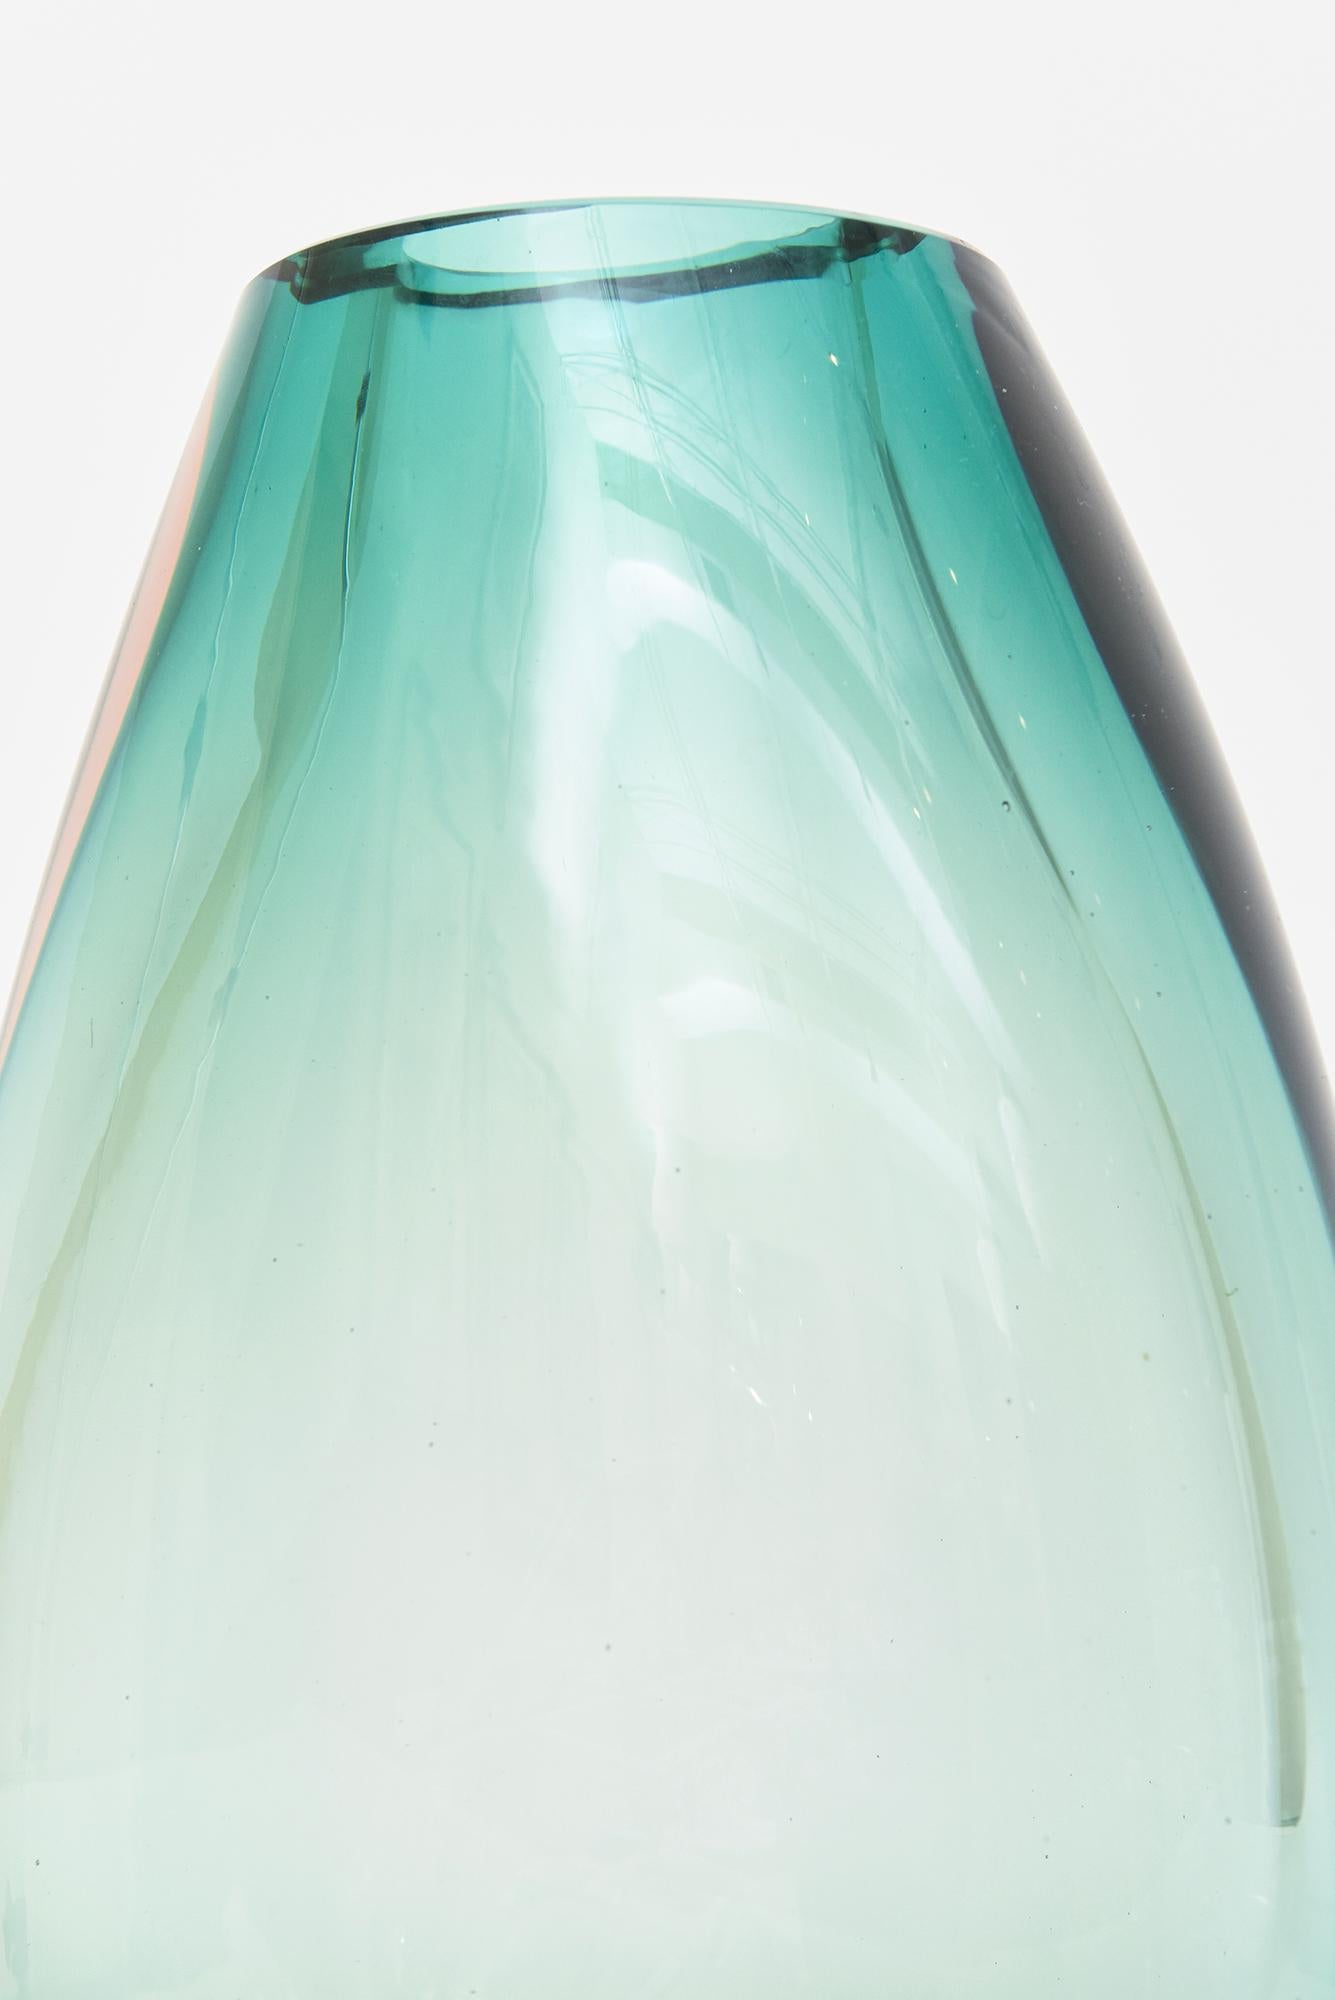 Antonio da Ros for Cenedese Murano Vintage Sommerso Glass Vase Sea Green, Peach In Good Condition For Sale In North Miami, FL